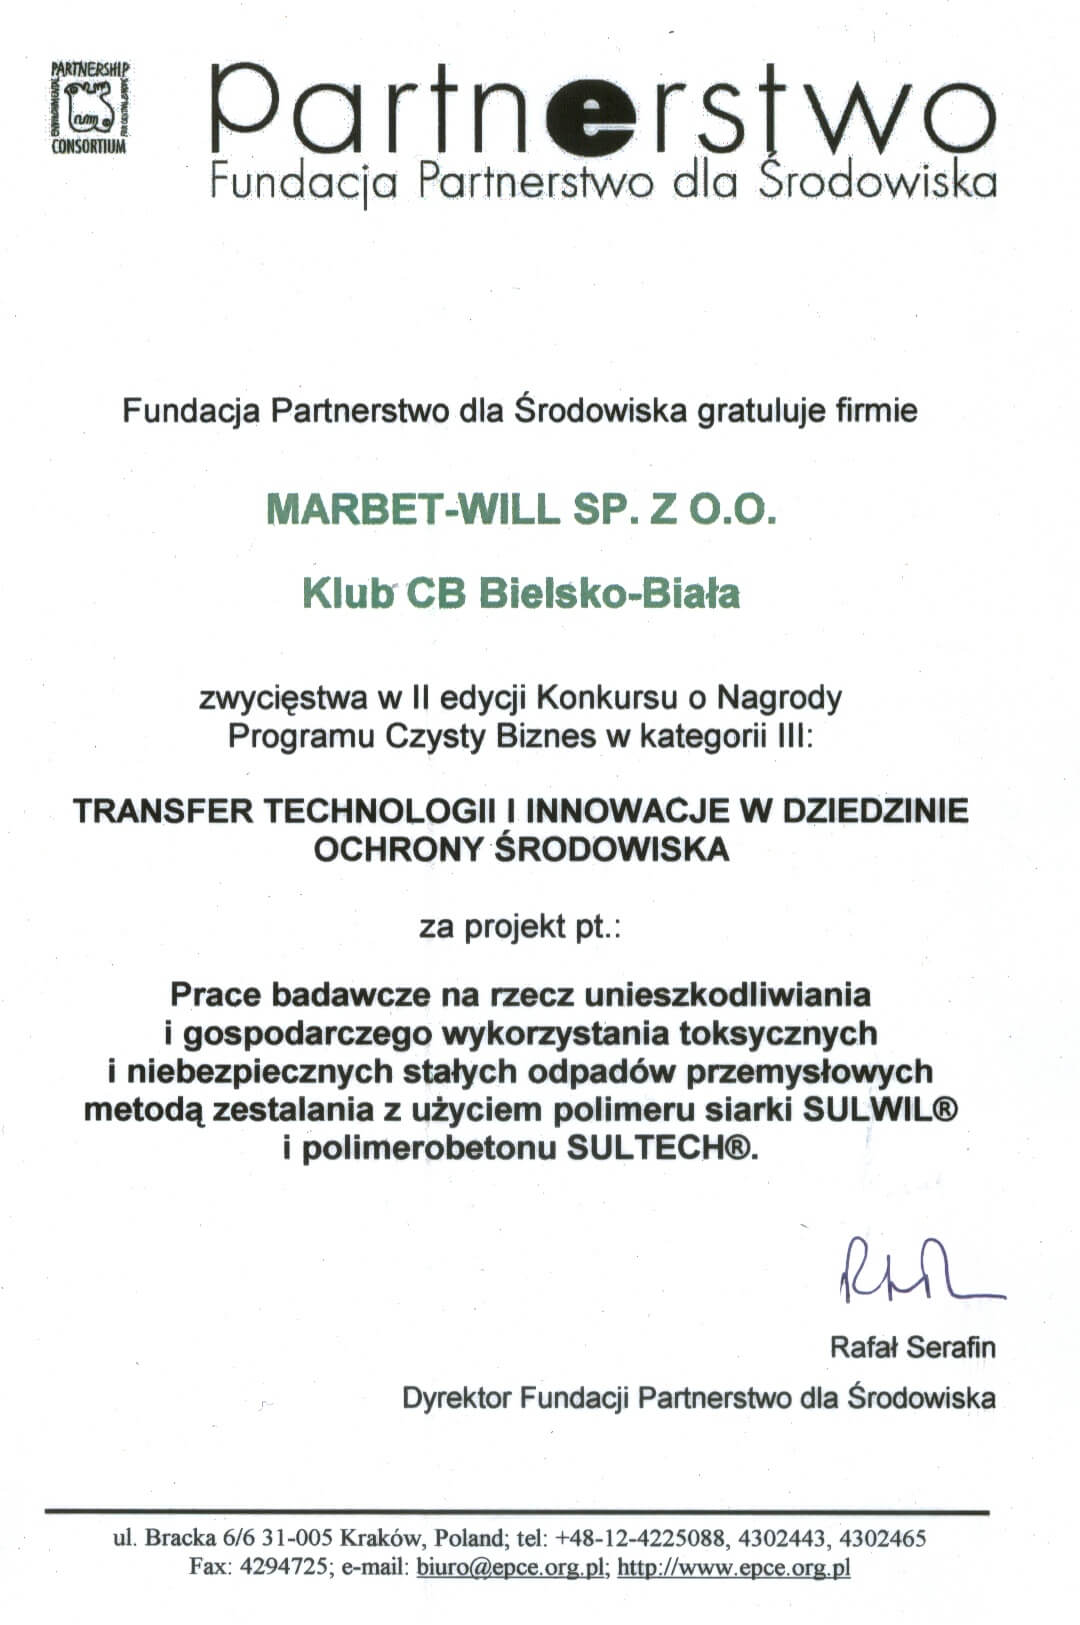 Program Czysty Biznes 2004 - Sulwil, Sultech